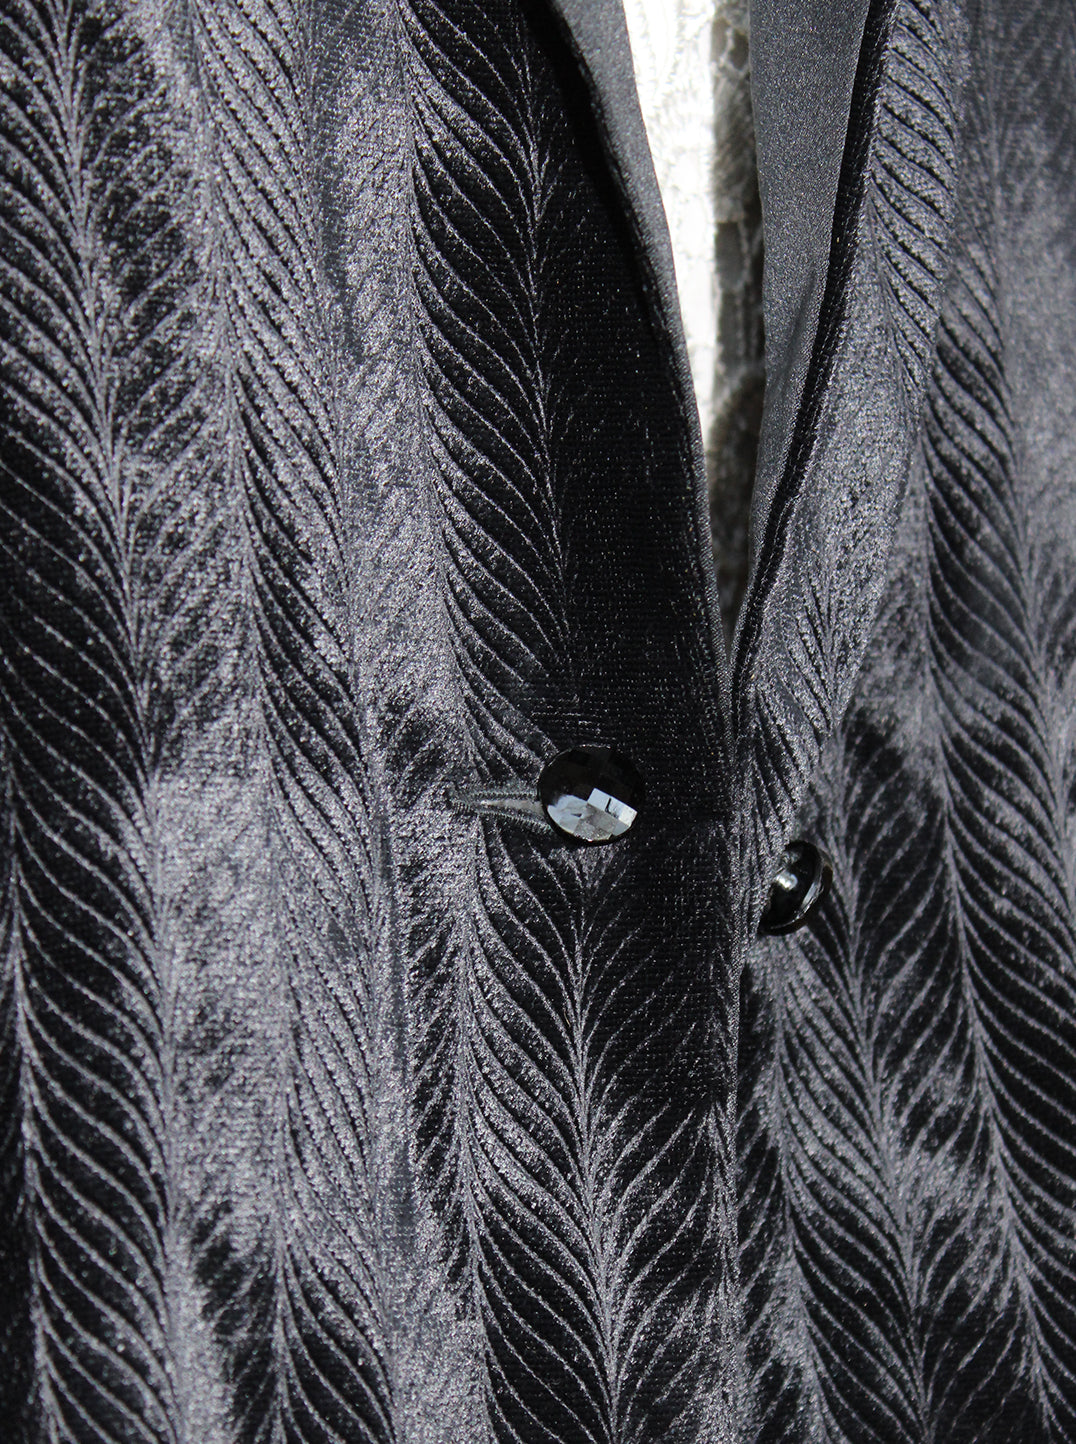 Black Velvet Tuxedo Jacket